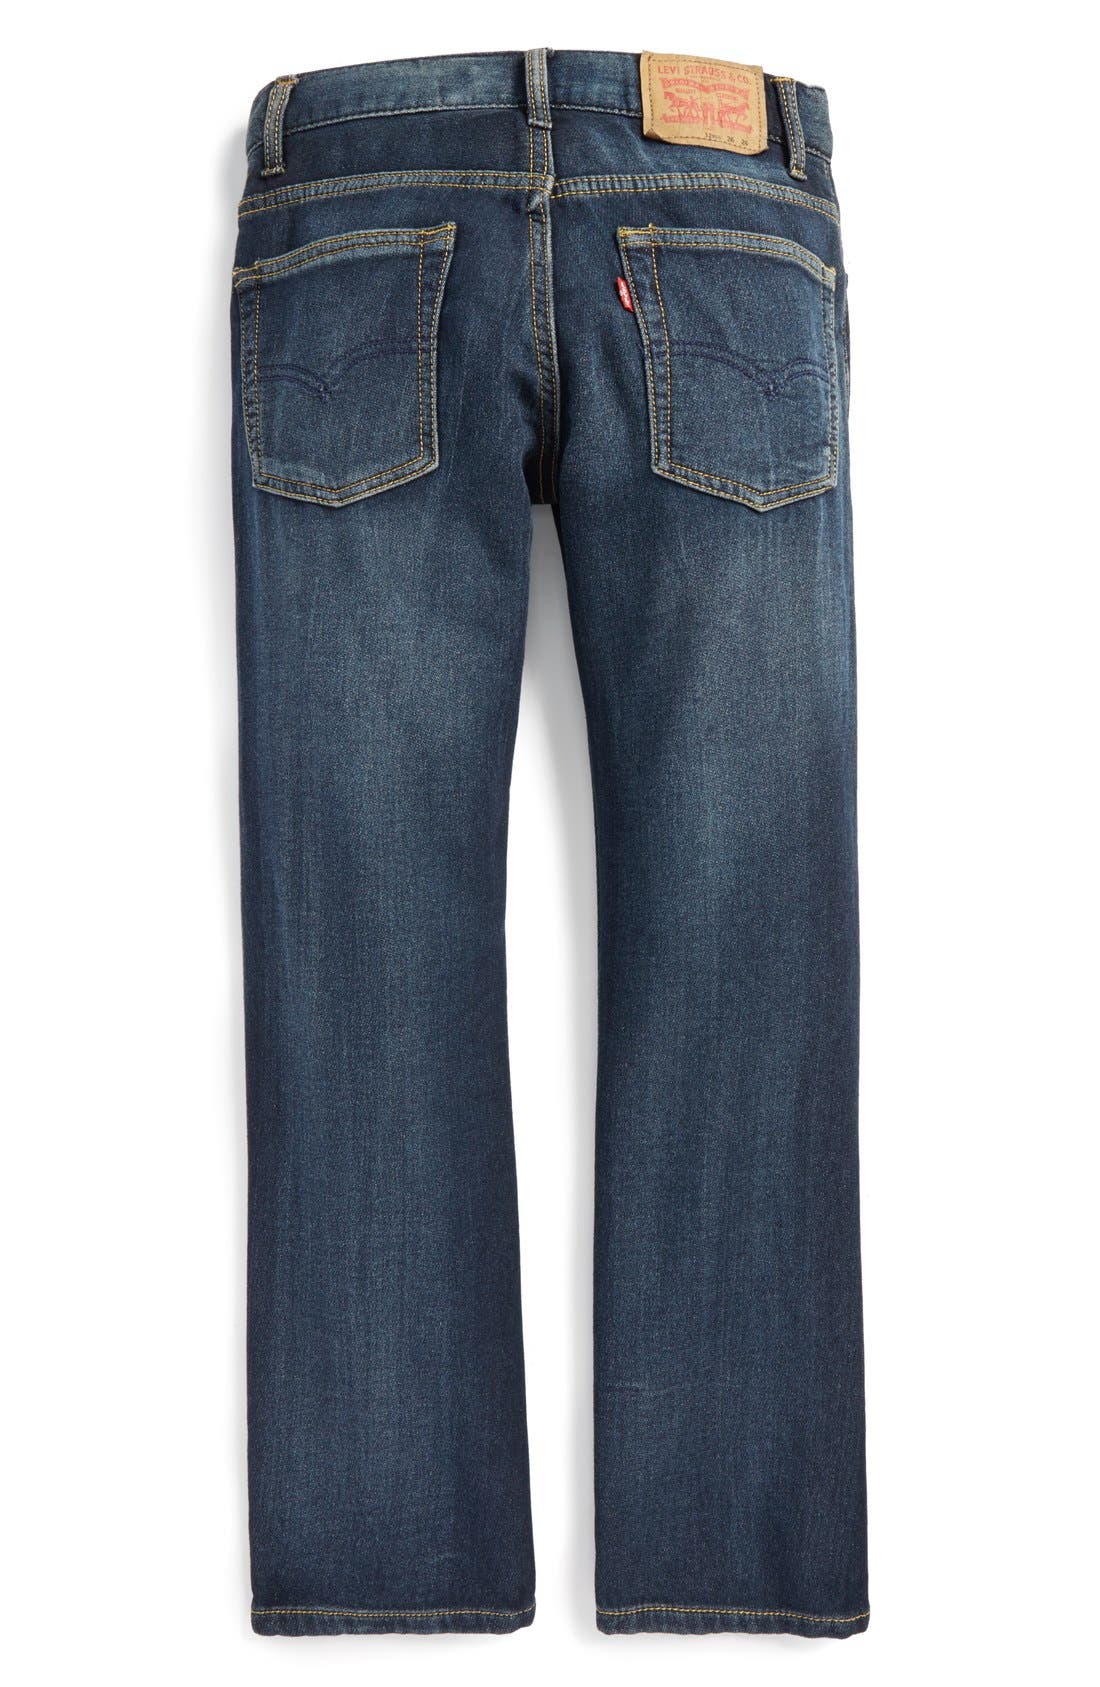 levis 511 knit jeans